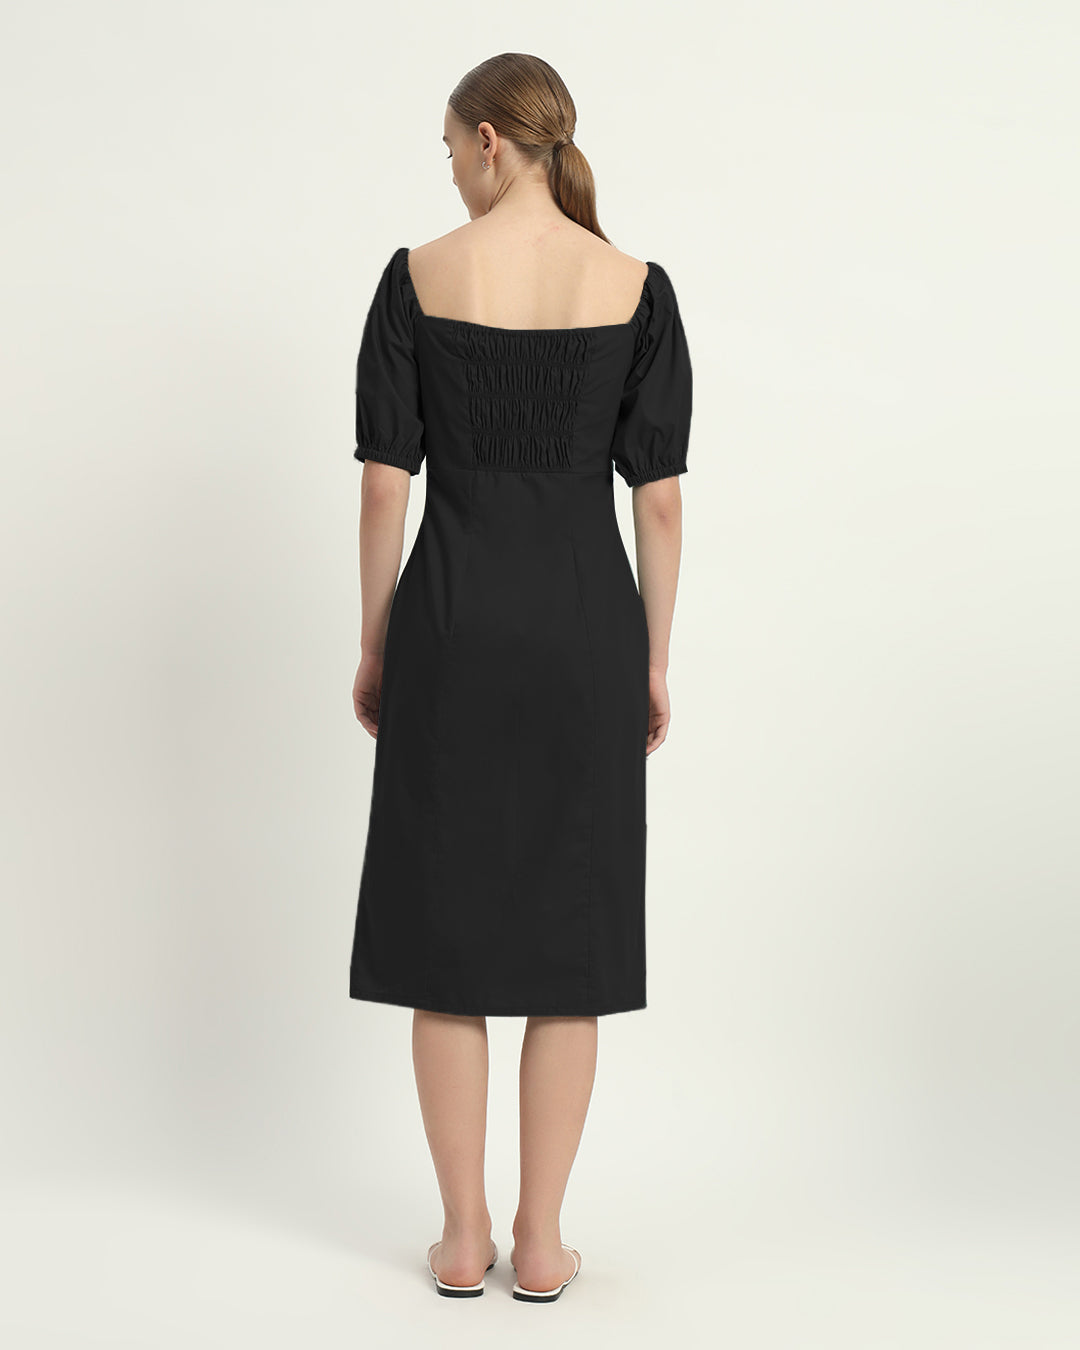 The Erwin Noir Cotton Dress